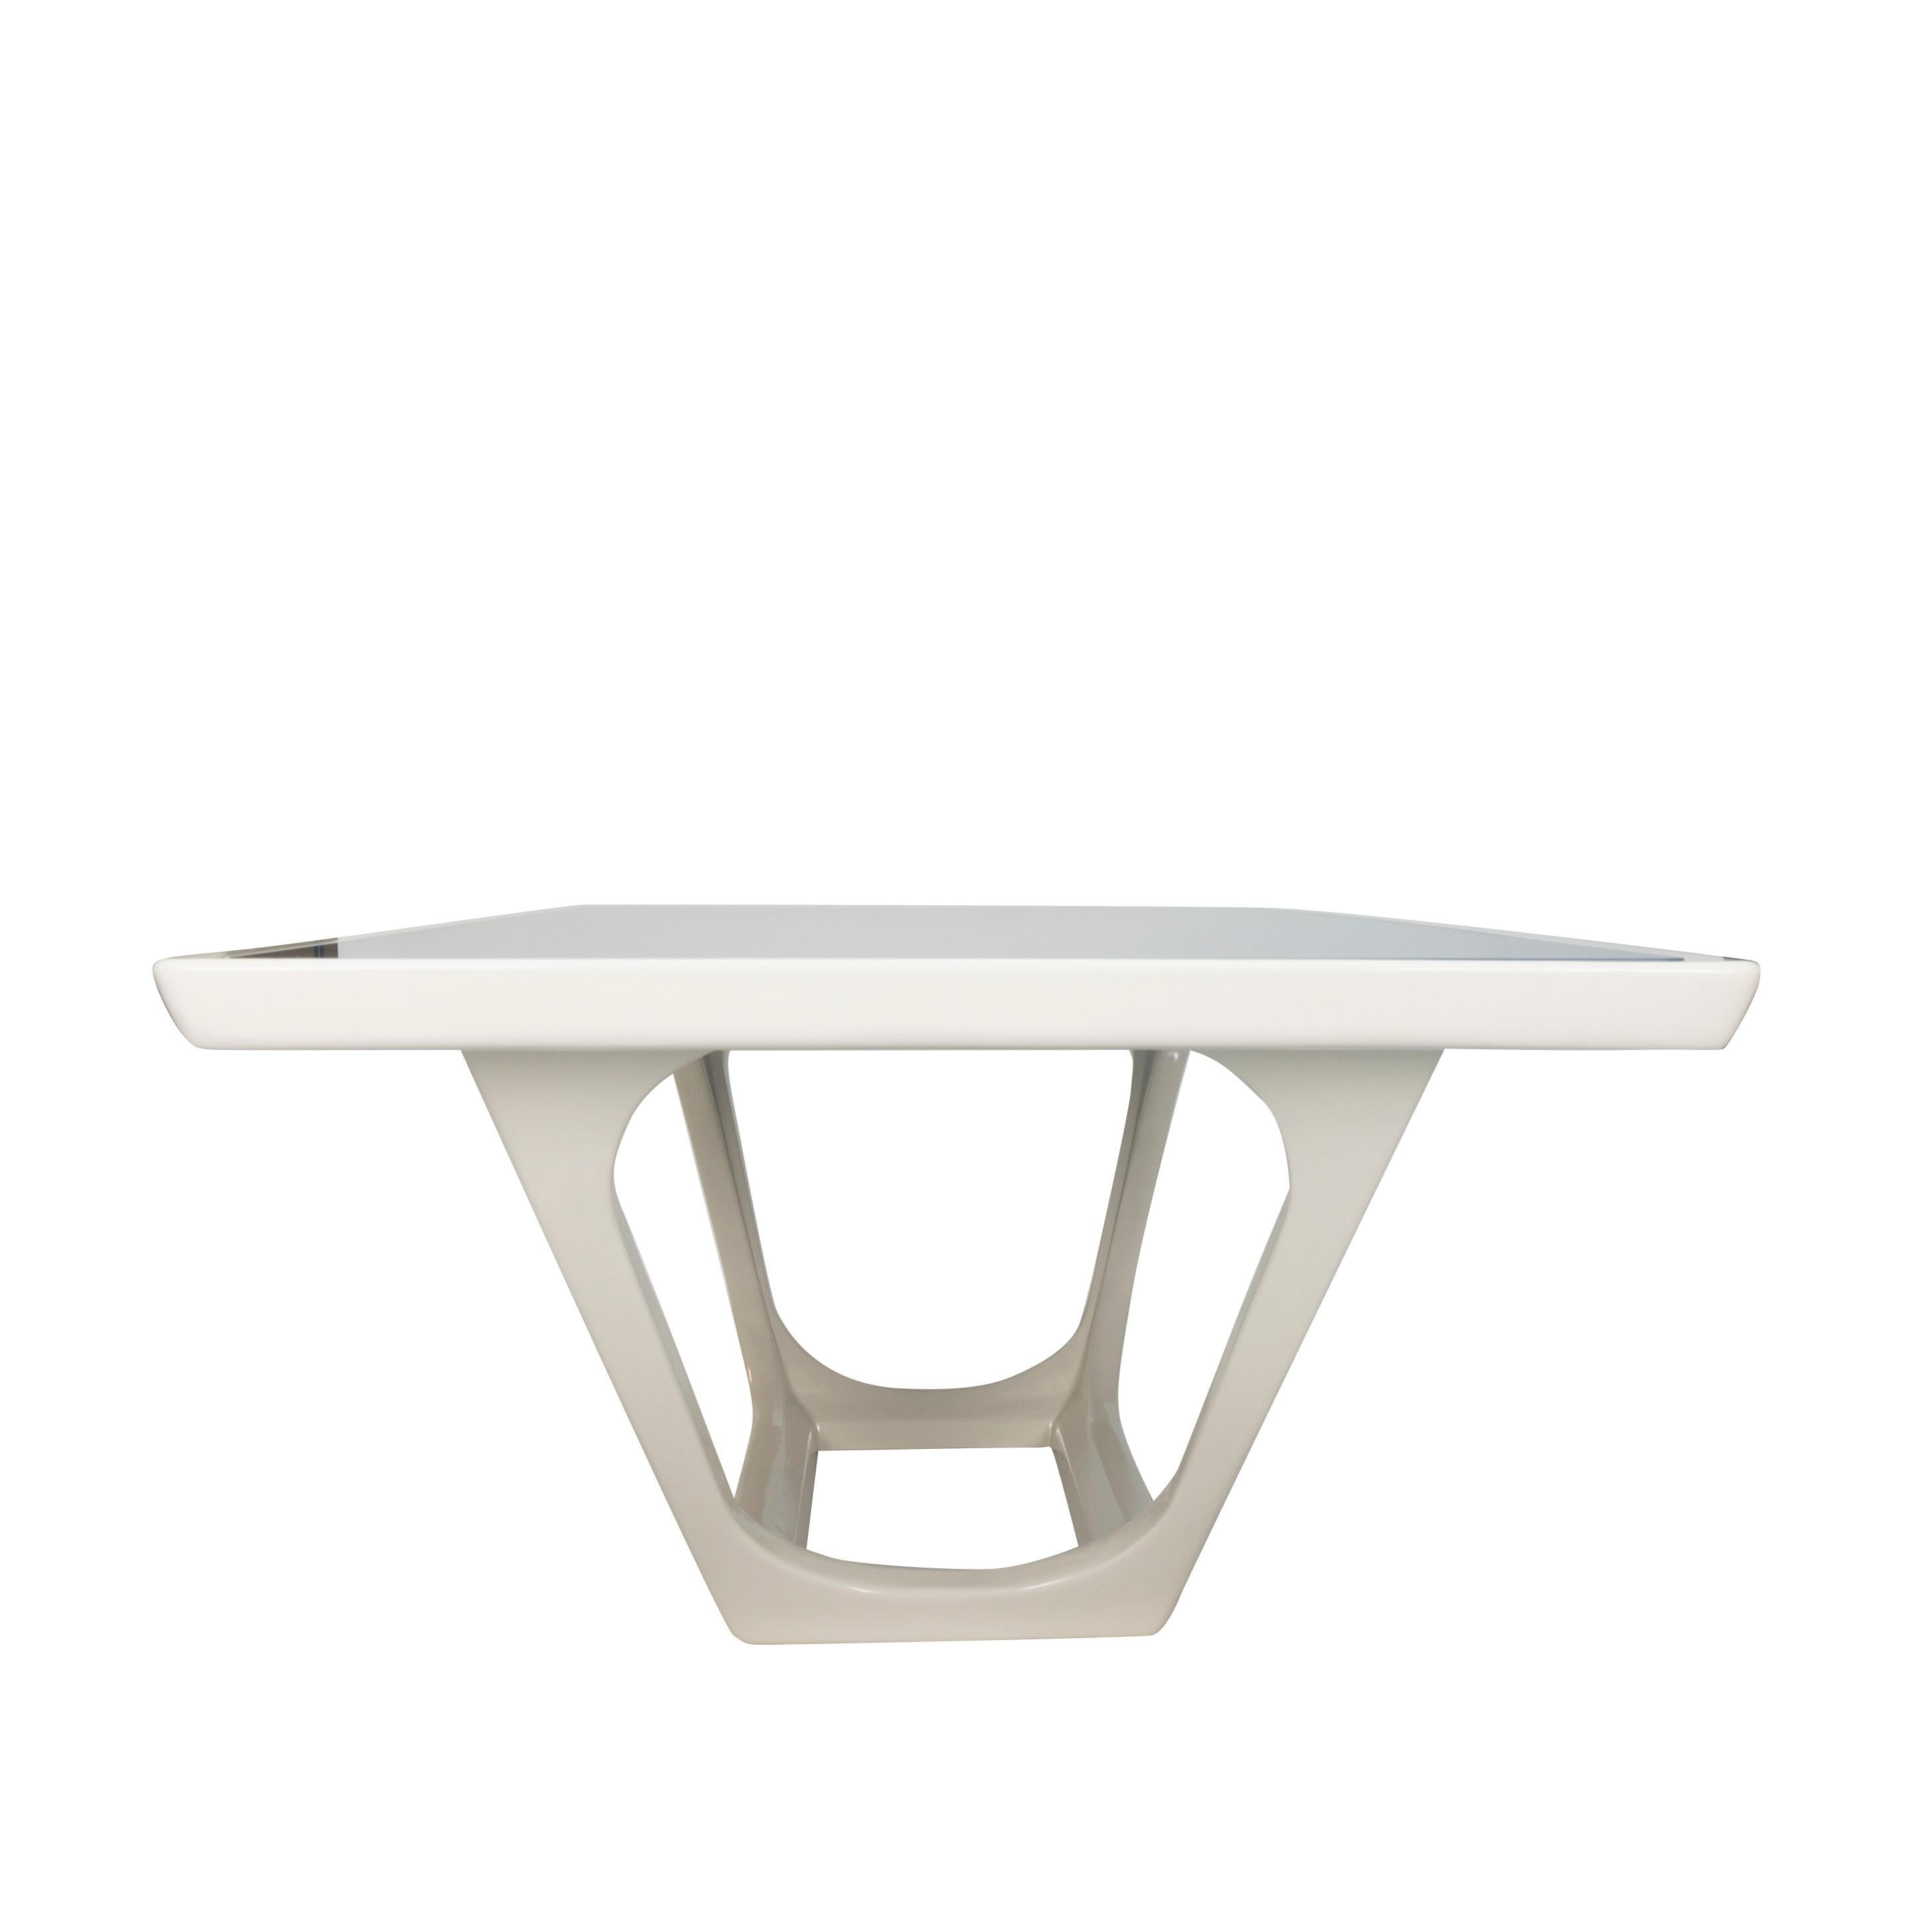 Notre table à manger Piscina est un concept original inspiré du design italien au style simpliste. La table présente un cadre en érable laqué en blanc lin avec un verre peint en bleu sur le dessus. La base présente une découpe trapézoïdale aux bords